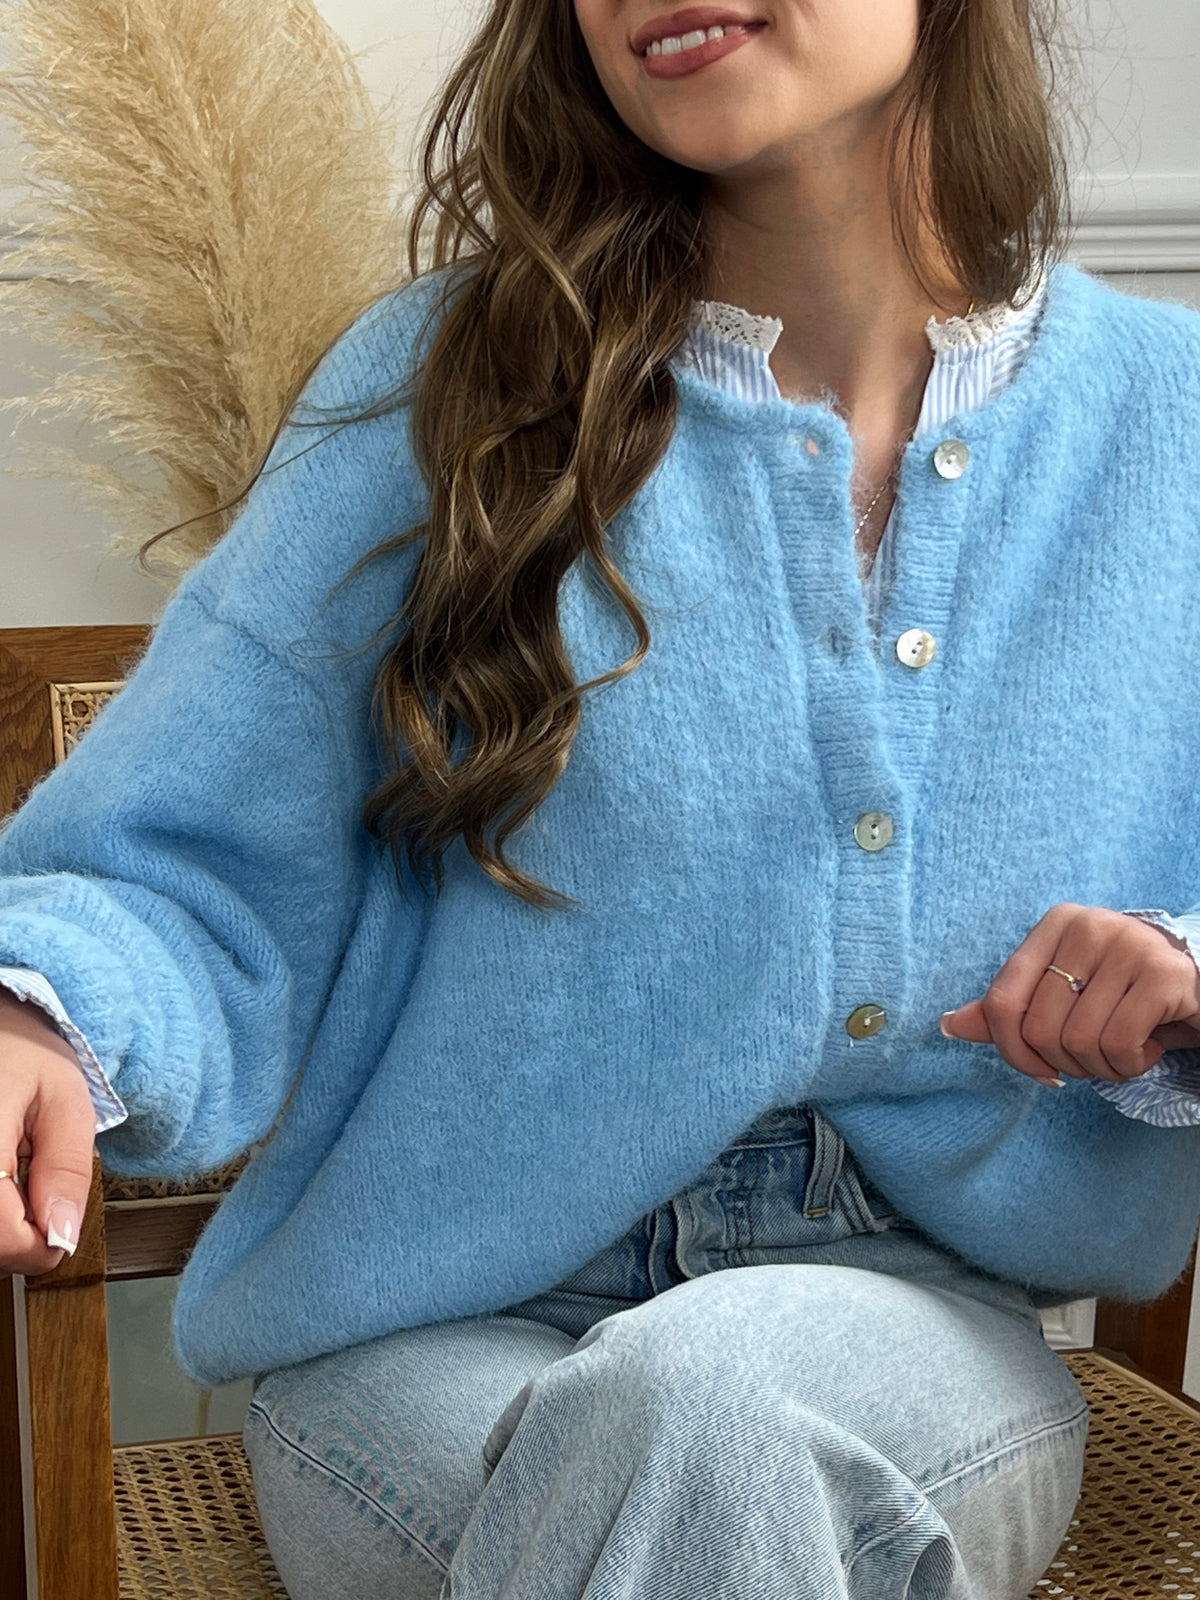 Le Gilet bleu Lydian est un essentiel pour toutes les femmes élégantes. Avec ses manches longues, son col rond et ses boutons sur la longueur, il offre un ajustement confortable et une touche sophistiquée à votre look.